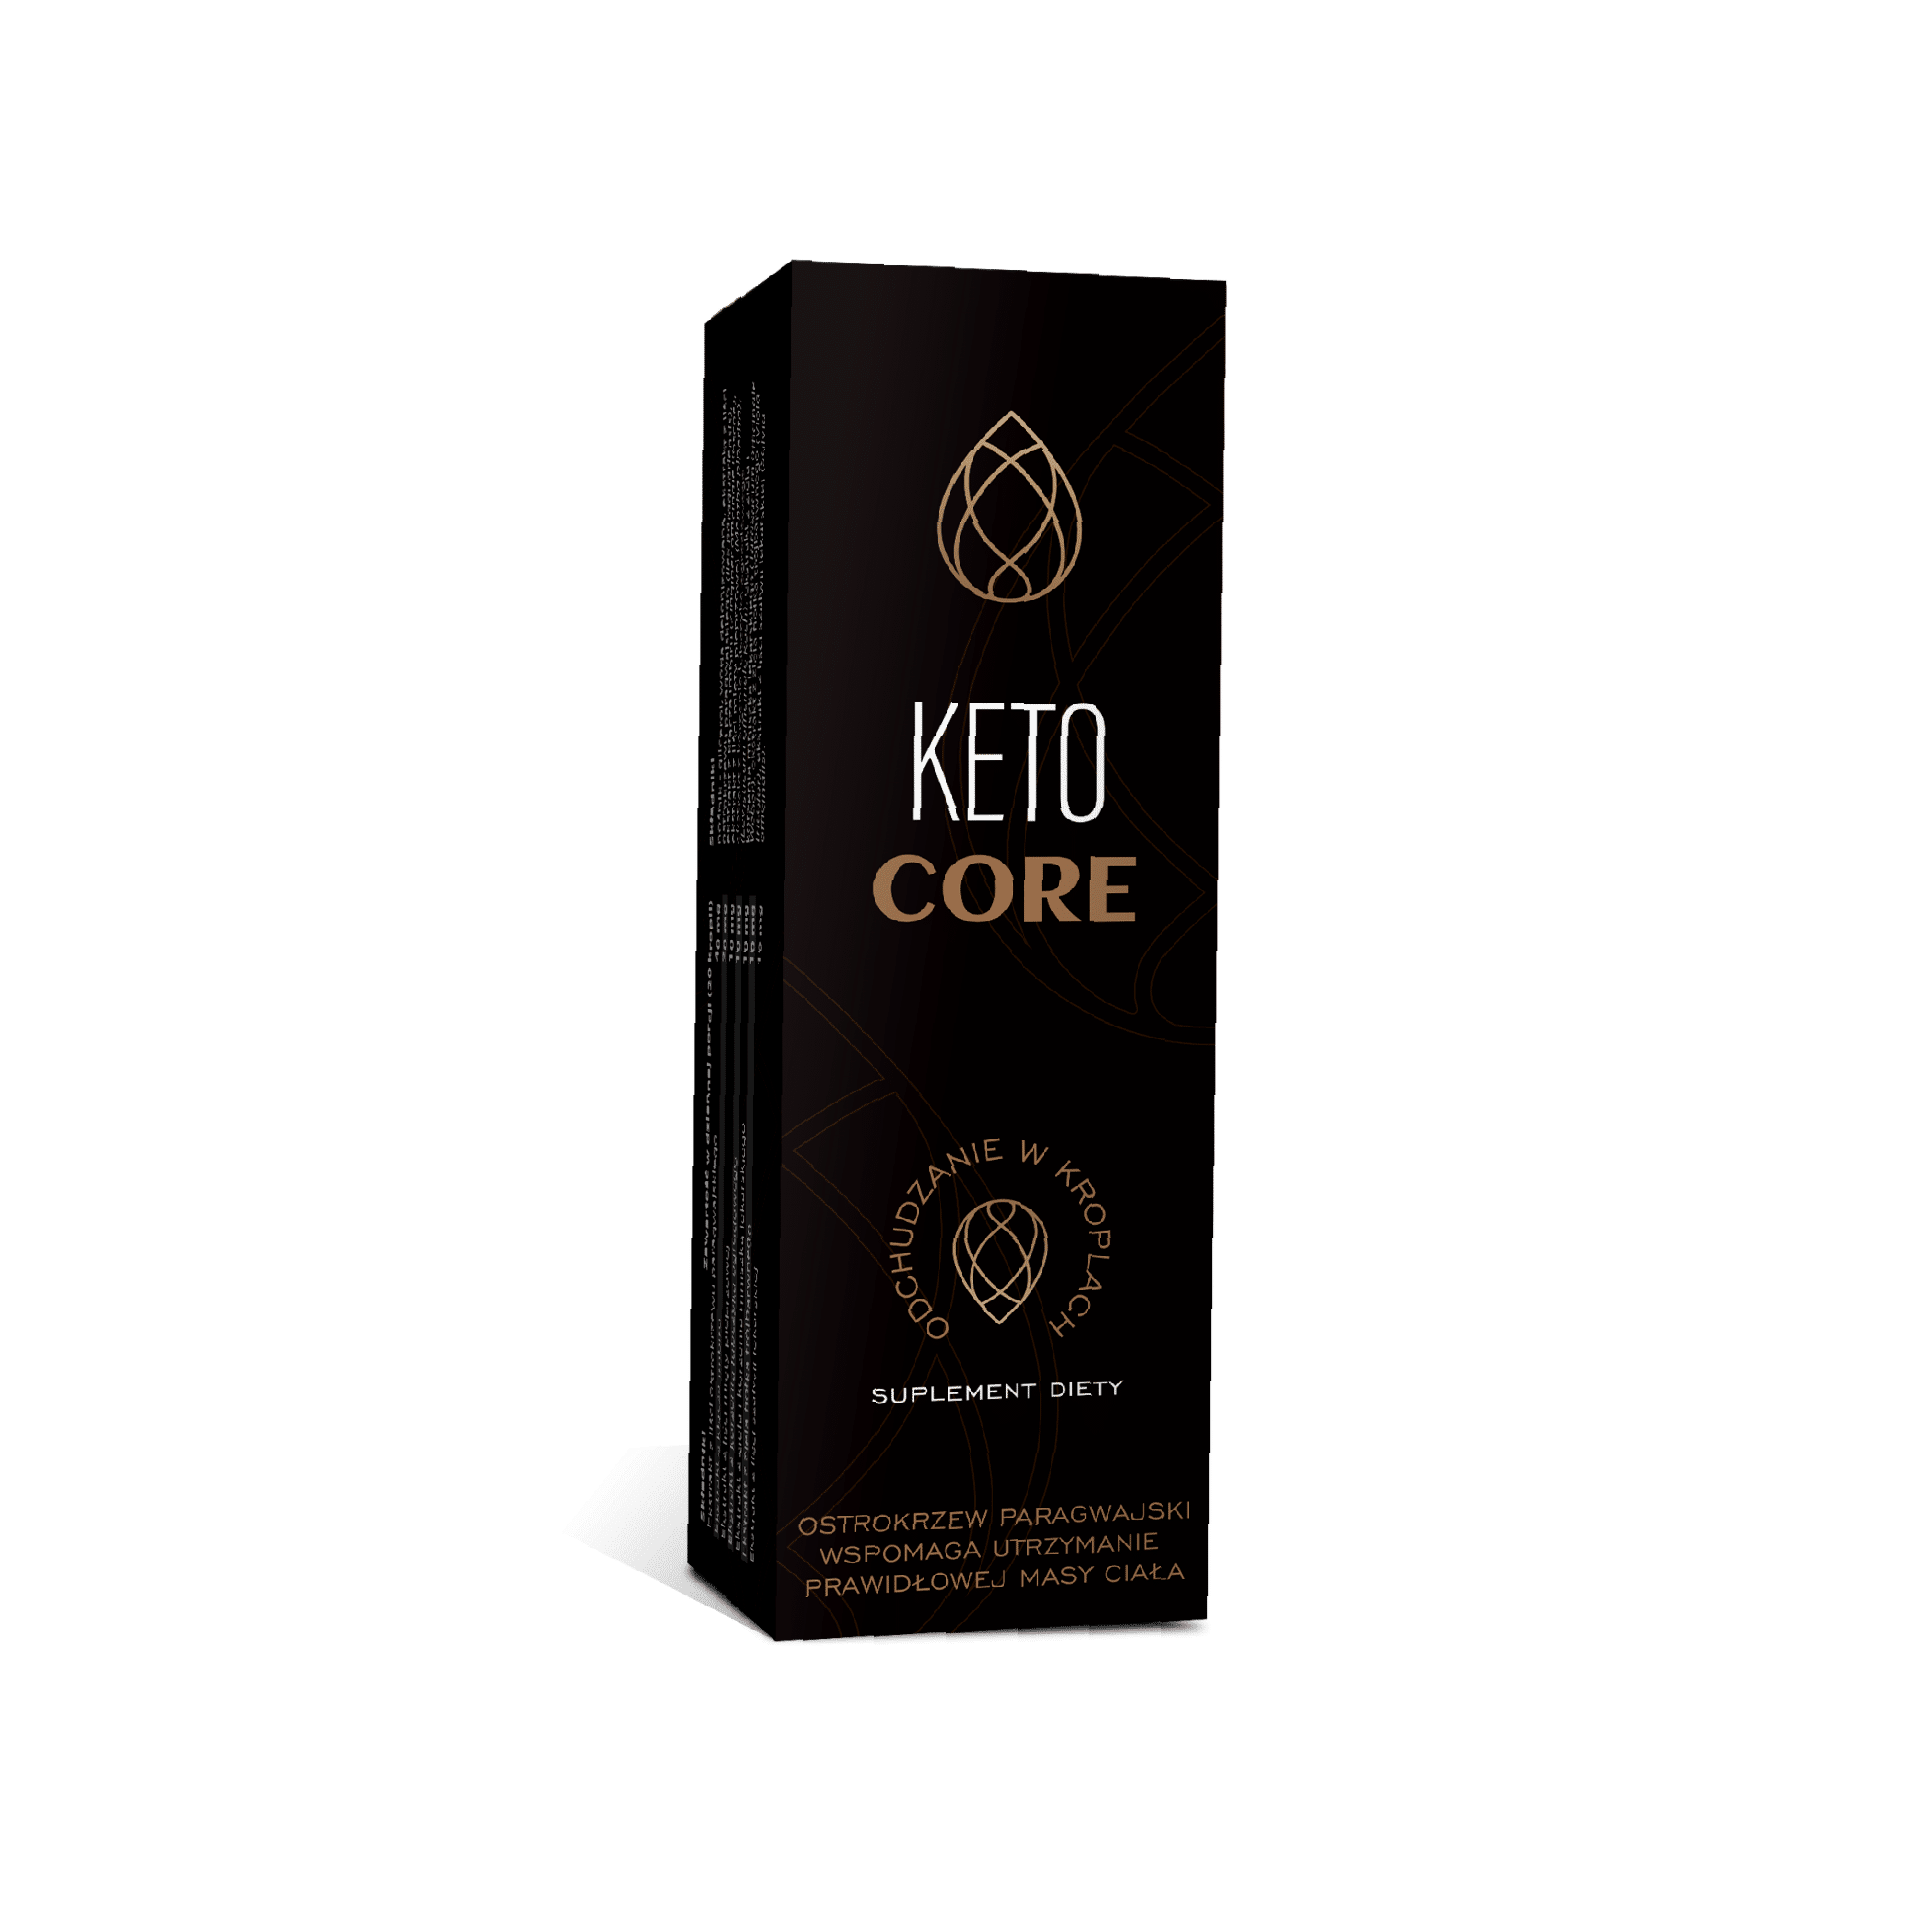 Keto Core - ¿Qué es